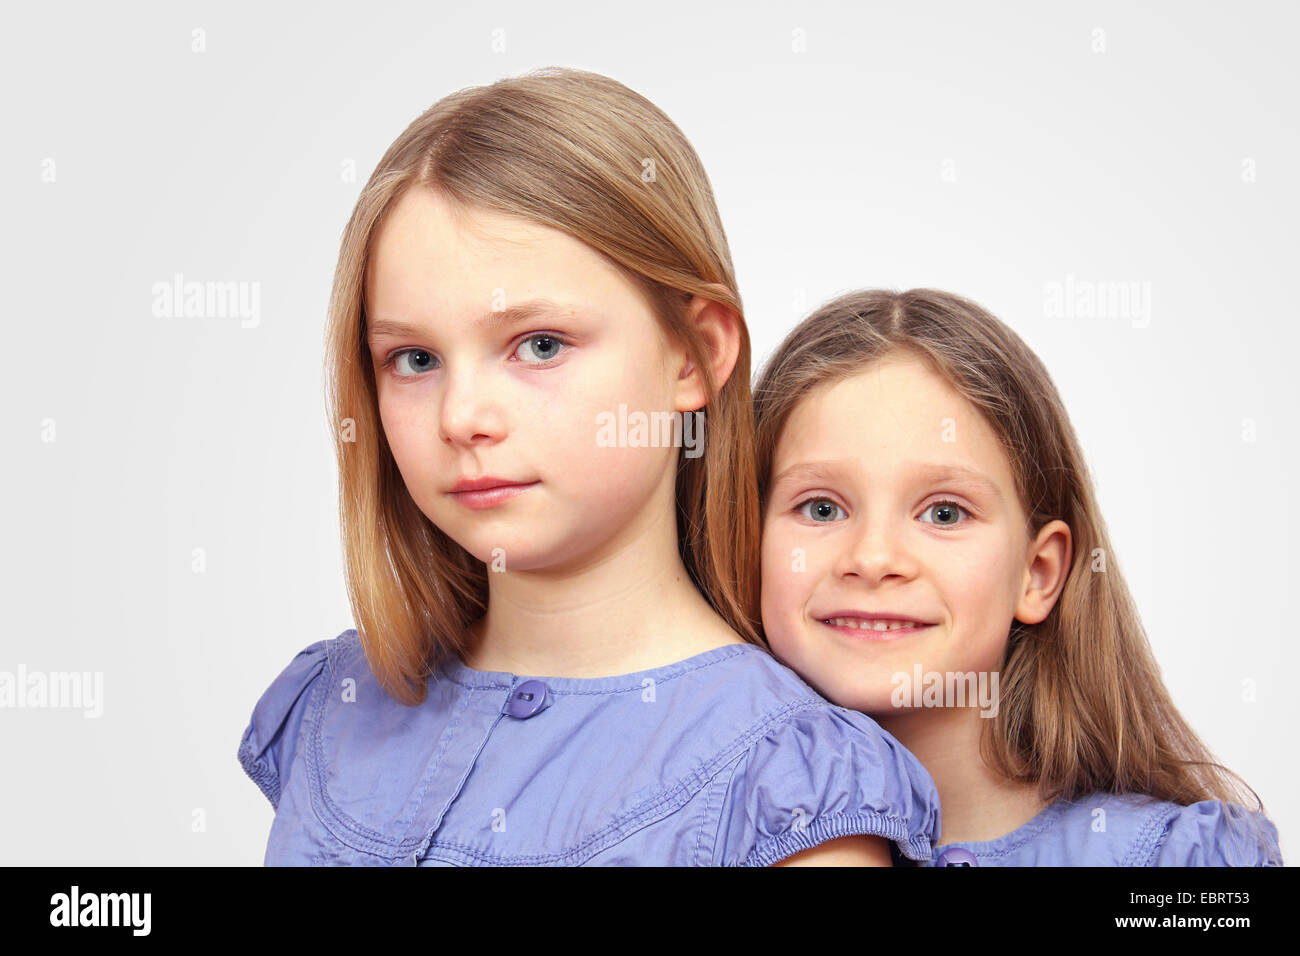 Deux jeunes filles avec de longs cheveux blonds Banque D'Images